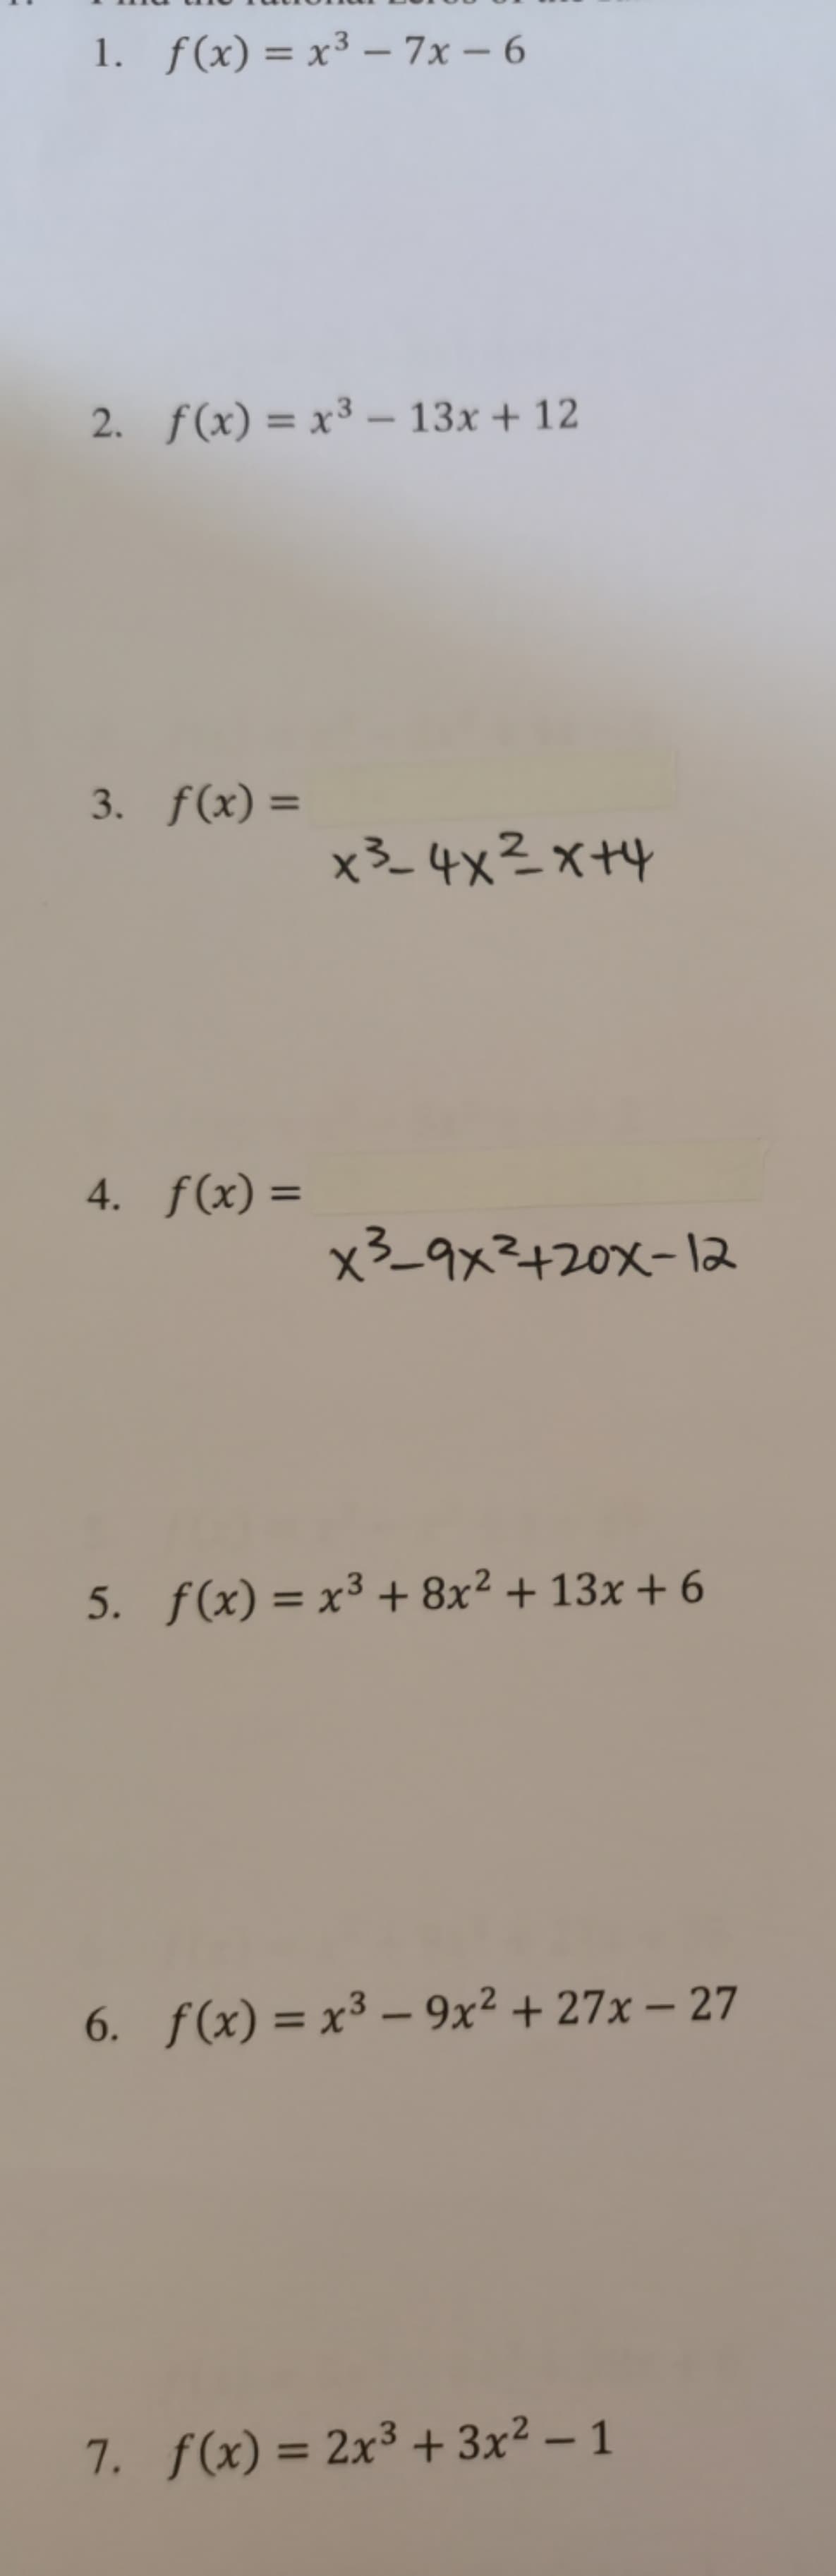 1. f(x) = x³ – 7x – 6
%3D
2. f(x) = x³ – 13x + 12
3. f(x) =
x3_ 4x?x+4
4. f(x) =
%3D
x3_9x²+20x-l2
5. f(x) = x³ + 8x² + 13x + 6
6. f(x) = x³ – 9x² + 27x – 27
%3D
-
7. f(x) = 2x³ + 3x² – 1
%3D
